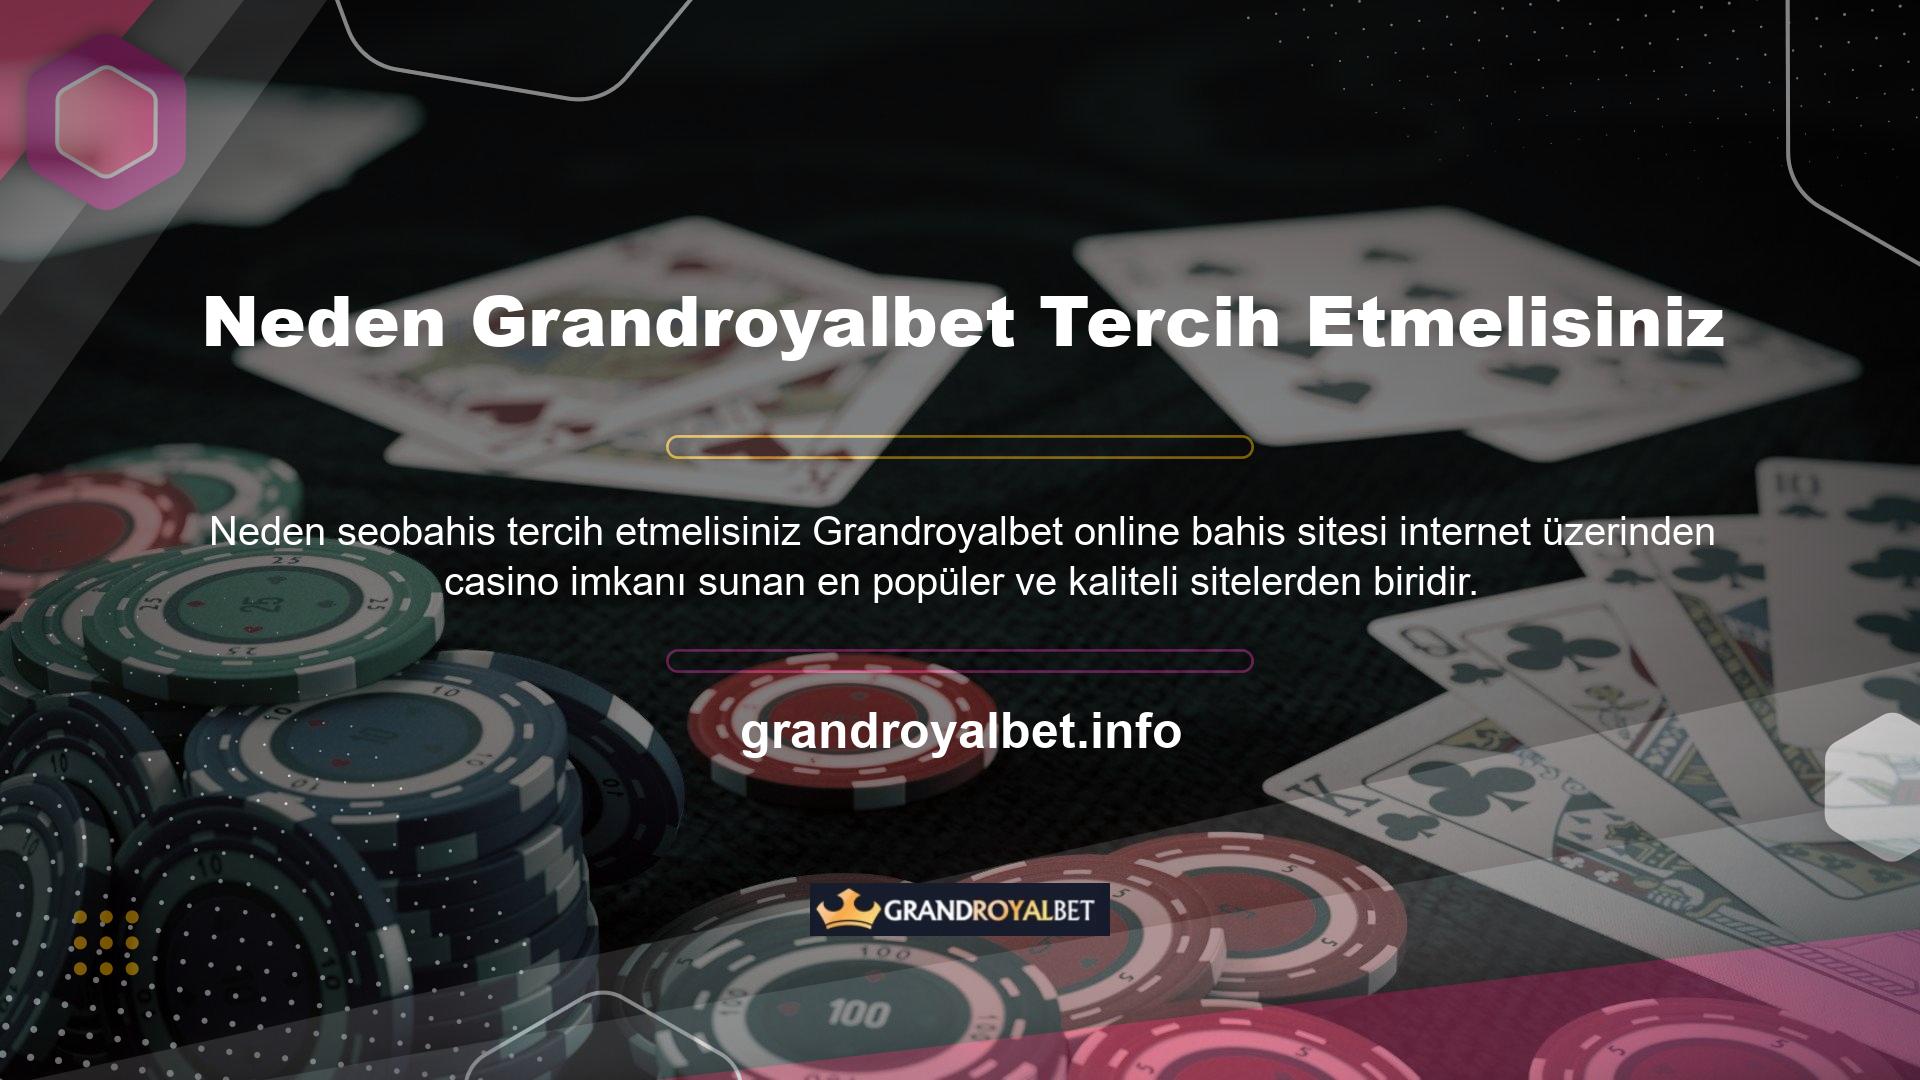 Grandroyalbet web sitesi bahislerinizi oynamanıza ve hızlı bir şekilde kar elde etmenize olanak sağlar